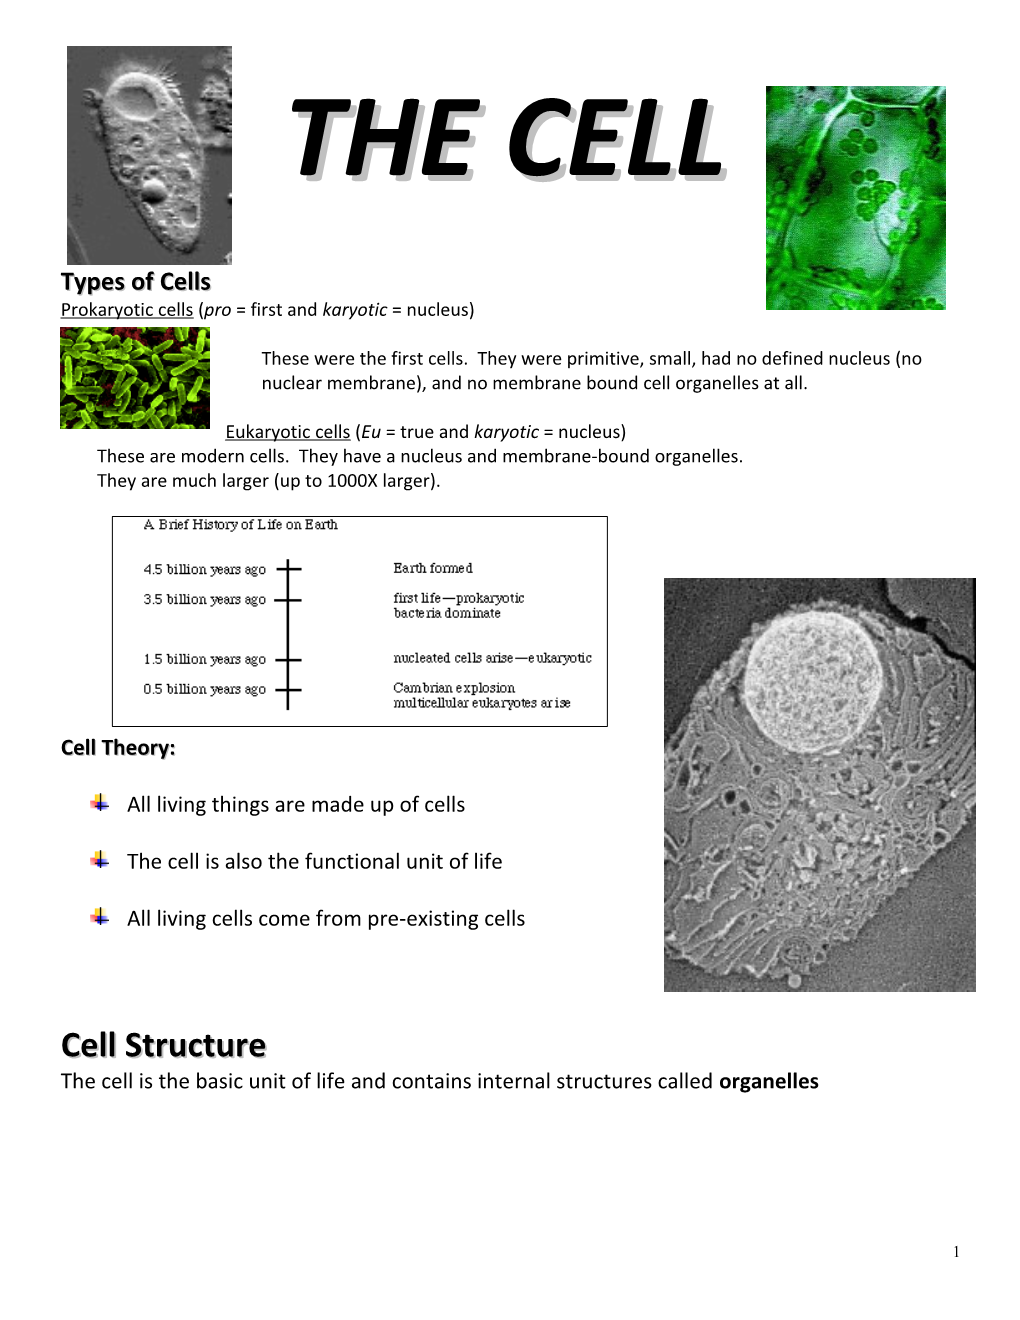 Prokaryotic Cells (Pro = First and Karyotic = Nucleus)